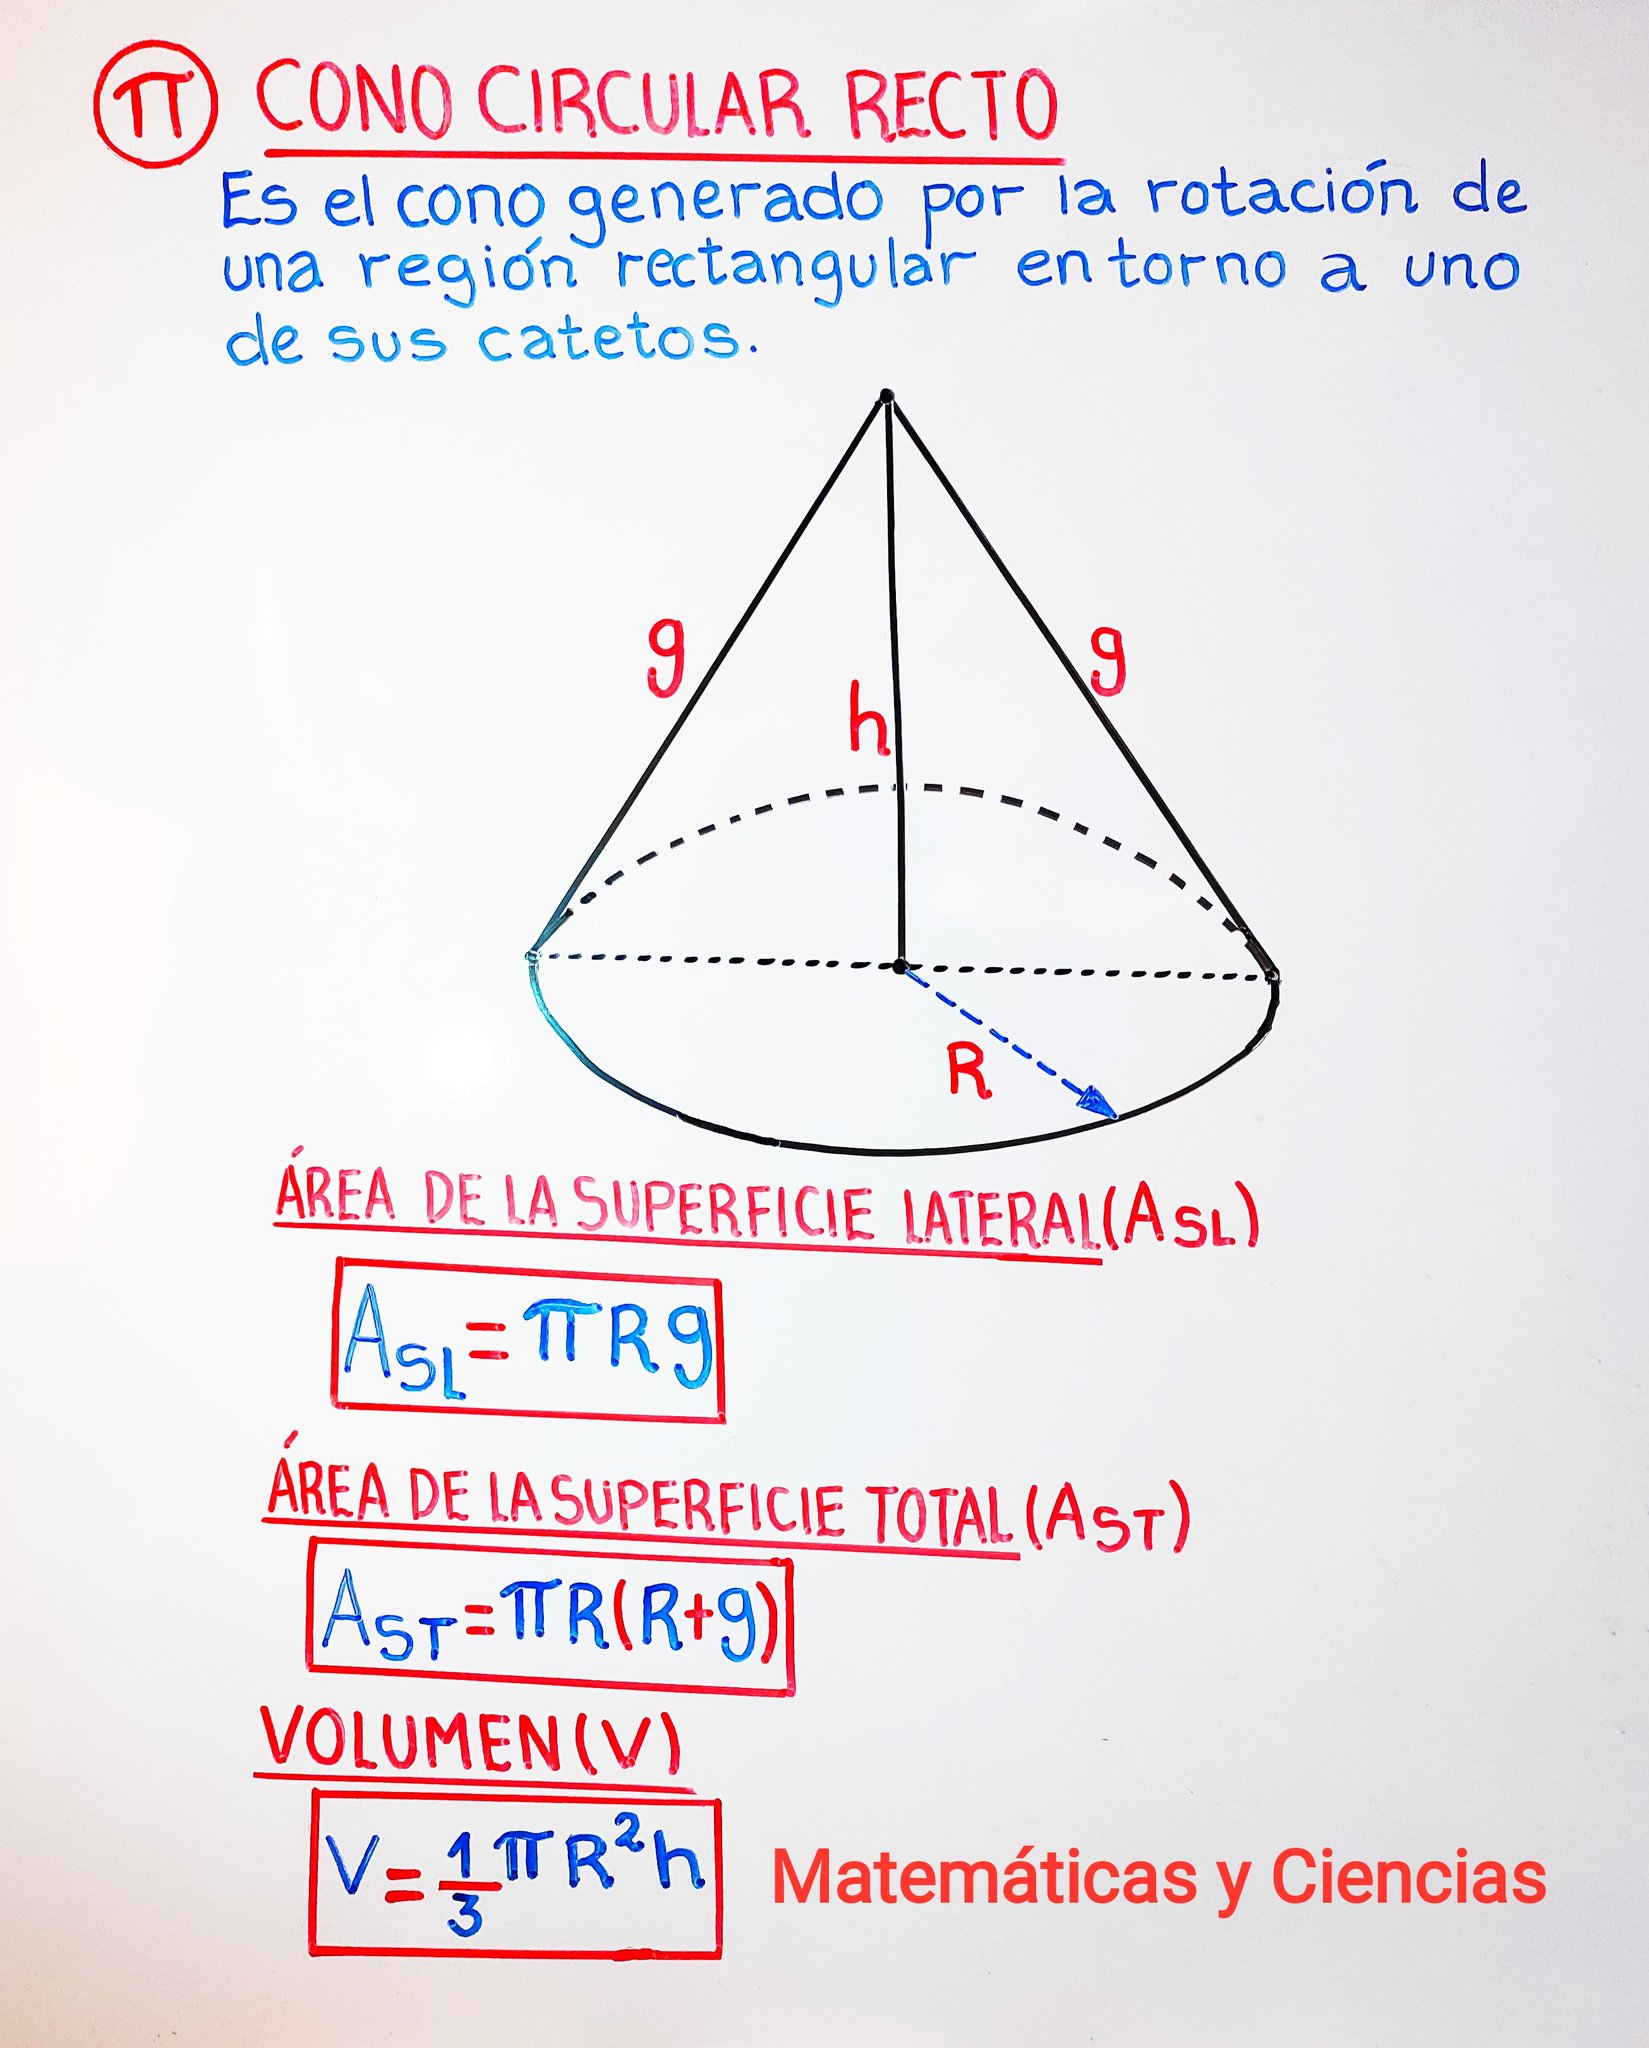 Capilla mediodía Península Matemática y Ciencias al Twitter: "#Cono 📝 Geometría del Espacio➡️Cono  circular recto. https://t.co/8Uv9RudLaW" / Twitter